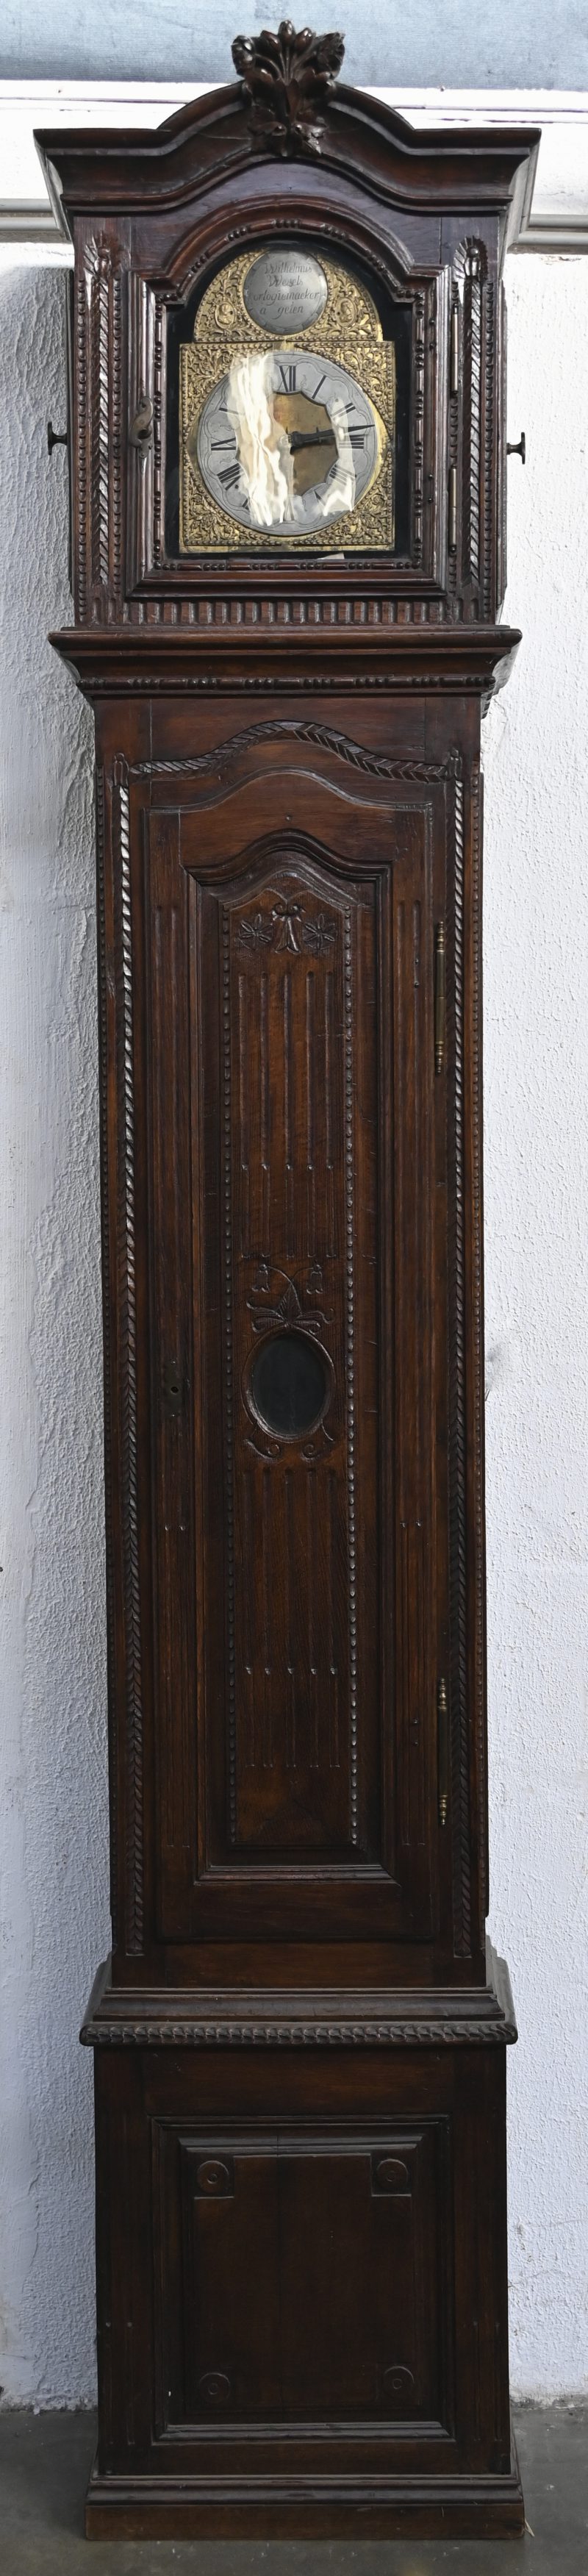 Een 19de eeuwse staande klok. Gesculpteerd notenhout. Met een werk van Wilhelmus Wessels ‘Orlogiemaeker à gelen. In werkende staat.